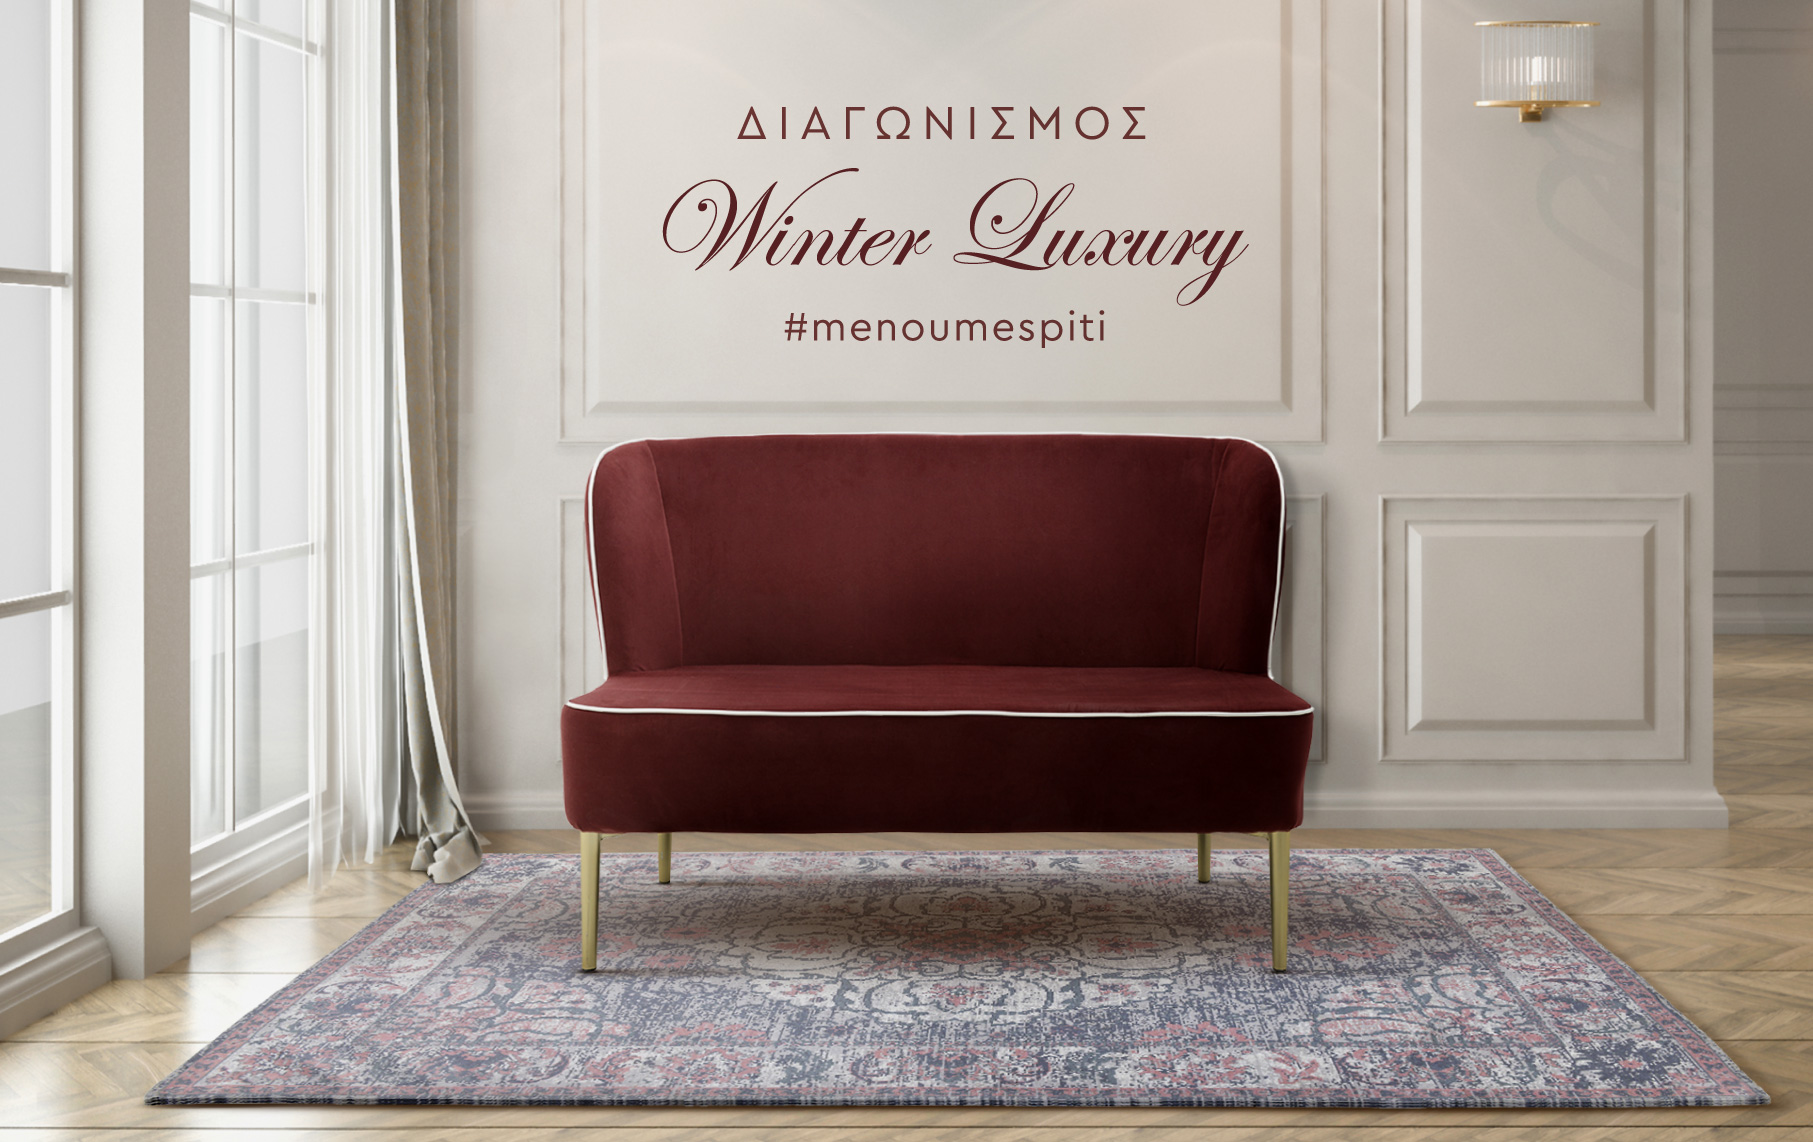 ΔΙΑΓΩΝΙΣΜΟΣ “Winter Luxury #menoumespiti”